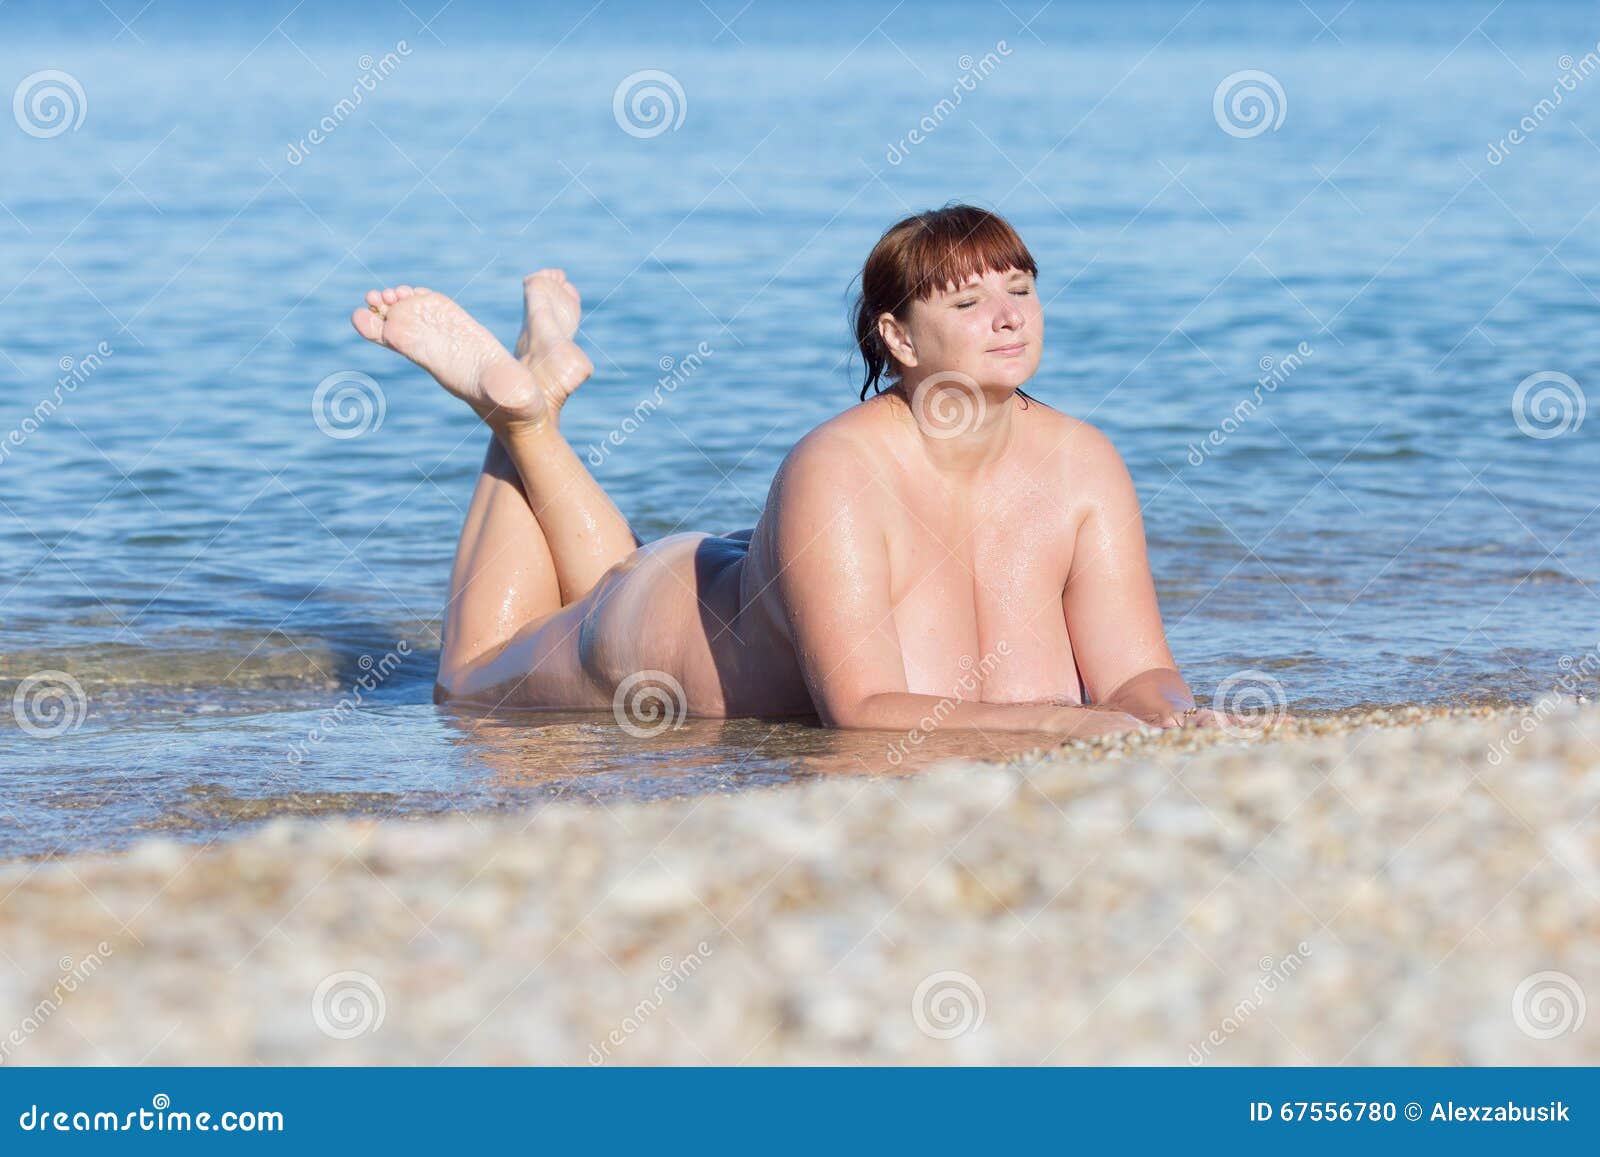 на пляже с голыми тетями рассказы фото 11